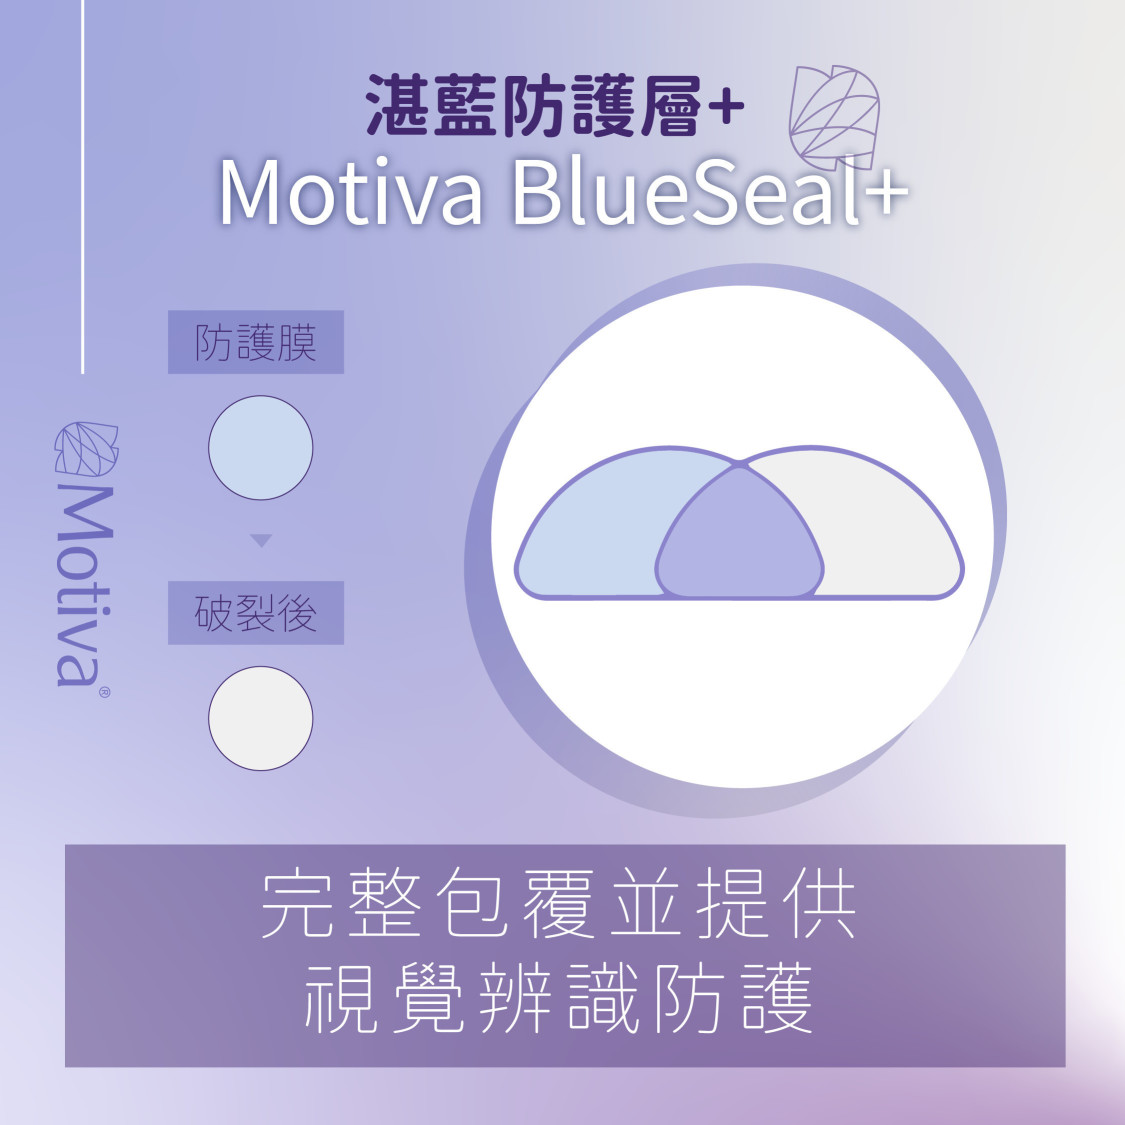 BLUSEAL+®湛藍防護層 有別於第一代魔滴的BLUSEAL，JOY魔滴（JOY Ergonomix2）採用具有更精密與強韌的設計BLUSEAL+®，主要是使用一層精細的藍色外膜覆蓋包膜，可完整包覆內部柔軟的SUPERSILICONES®，藍色外膜即使受到高壓碰撞更不易破裂外，亦有提供視覺辨識防護膜，當義乳受到細微的破壞或損傷，即使肉眼無法 辨別，淡藍色的外膜也會轉為白色，提供消費者更安全有效的保護措施。